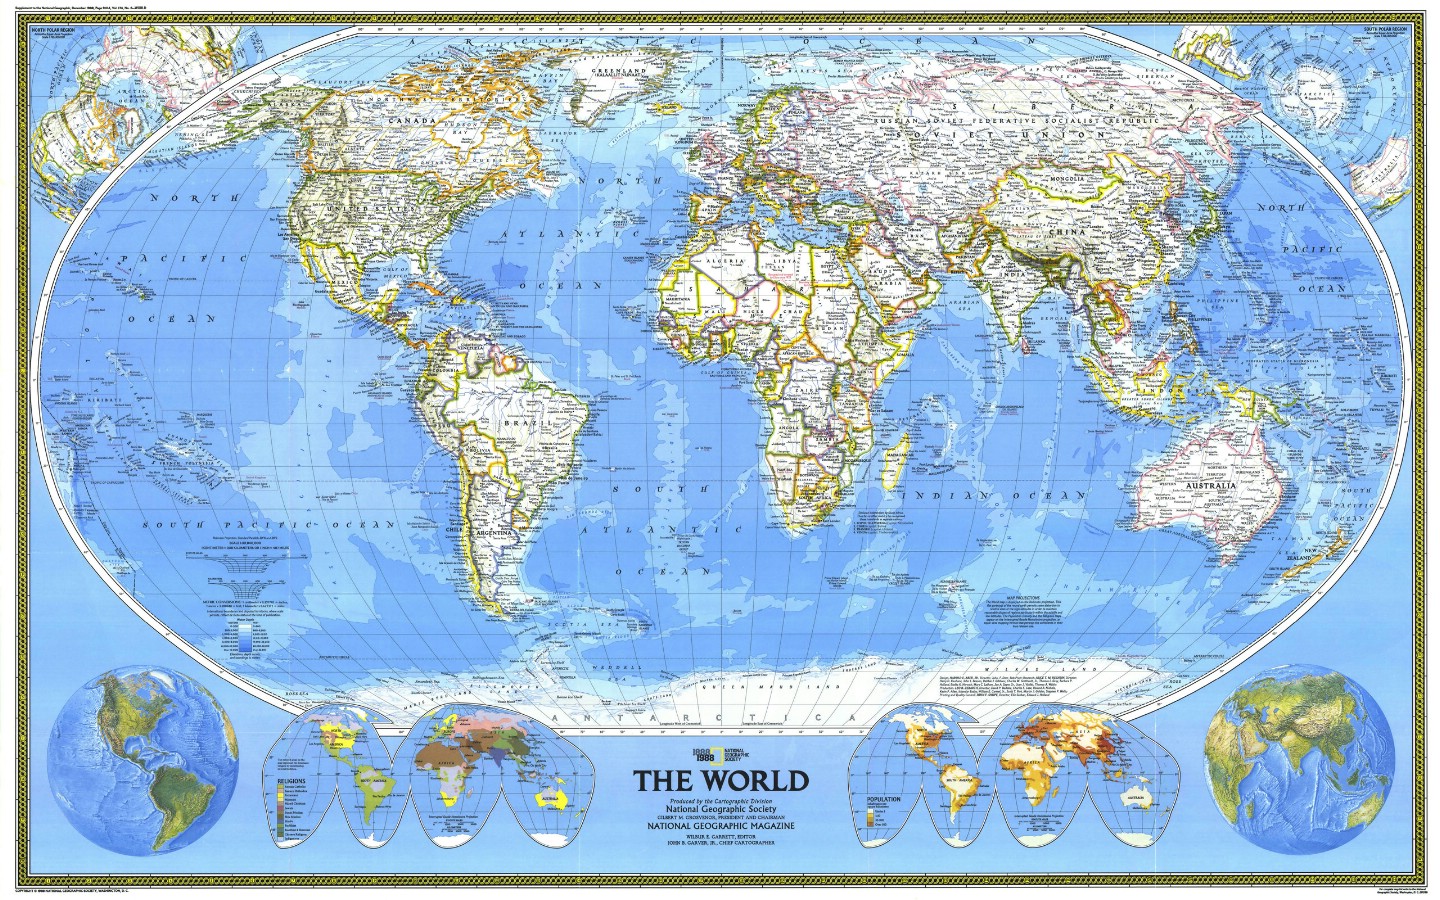 壁纸1440x900超大世界地图 1 10壁纸 未归类 超大世界地图 第一辑壁纸 未归类 超大世界地图 第一辑图片 未归类 超大世界地图 第一辑素材 其他壁纸 其他图库 其他图片素材桌面壁纸